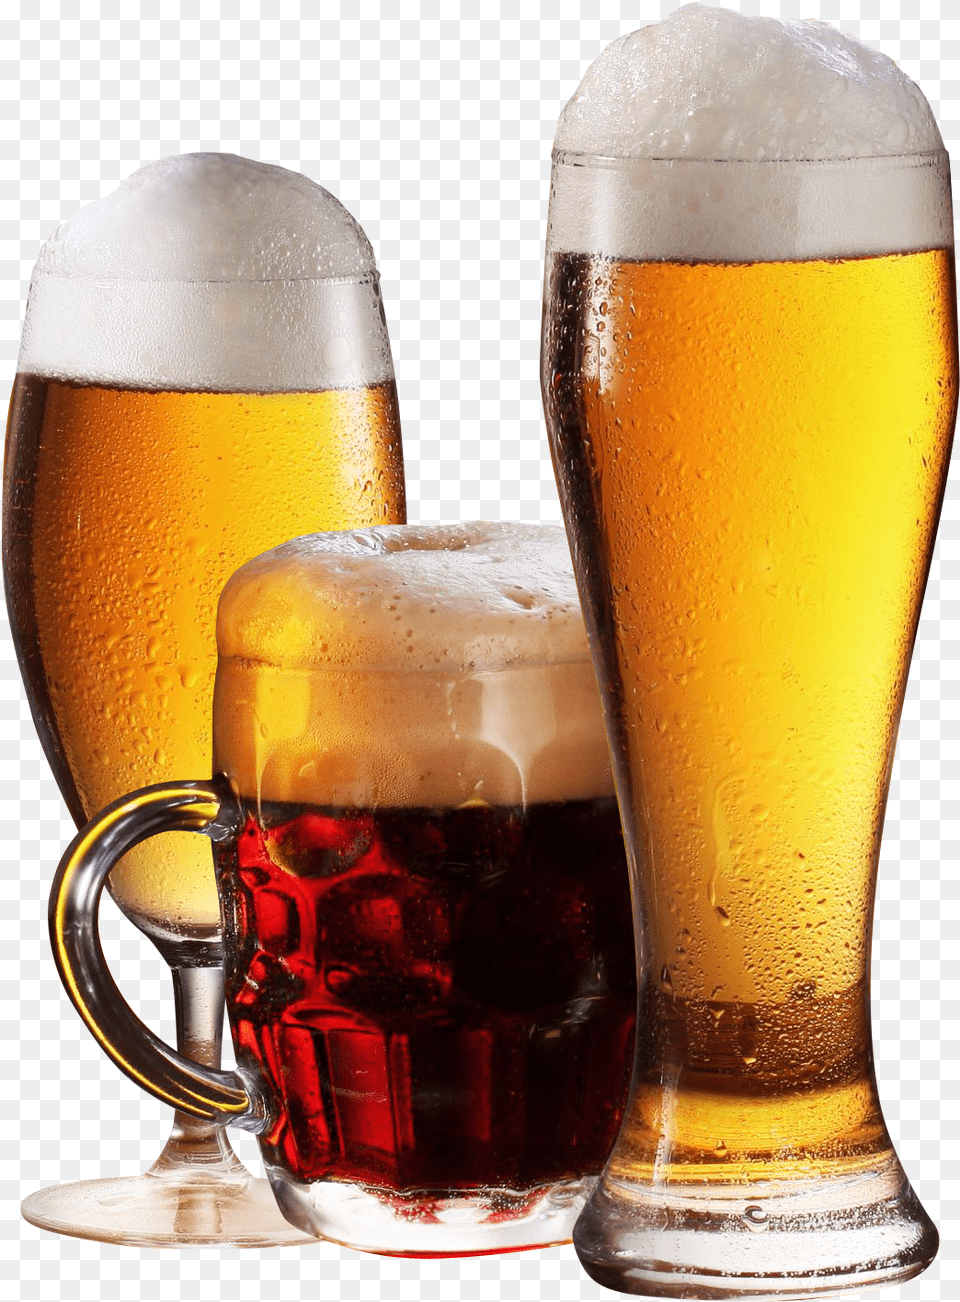 Beer Glass Transparent, Alcohol, Beer Glass, Beverage, Lager Png Image